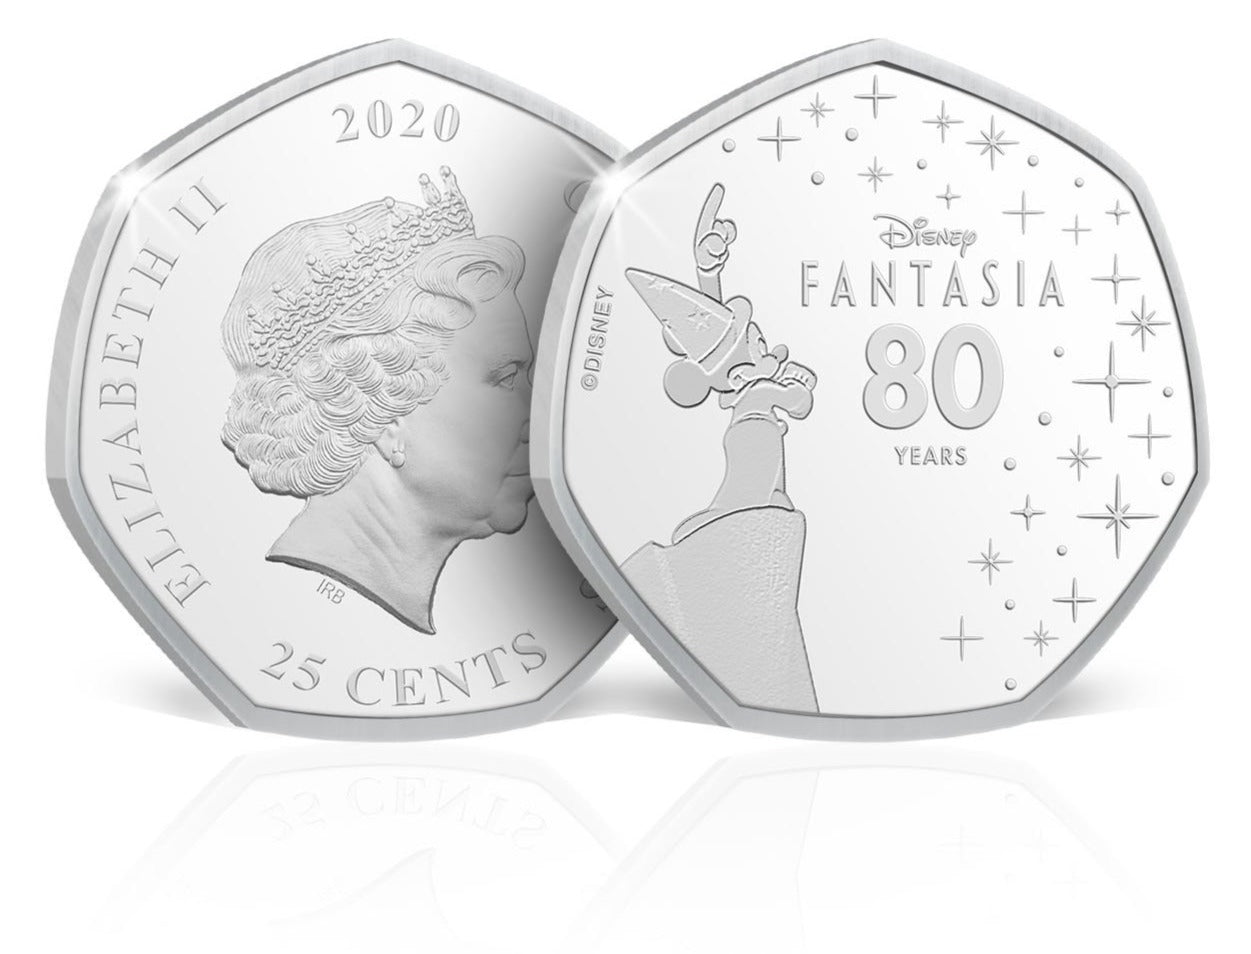 Moneda conmemorativa del 80 Aniversario de Fantasia, presentadas en un bonito Blister de Coleccionista. Edición limitada.